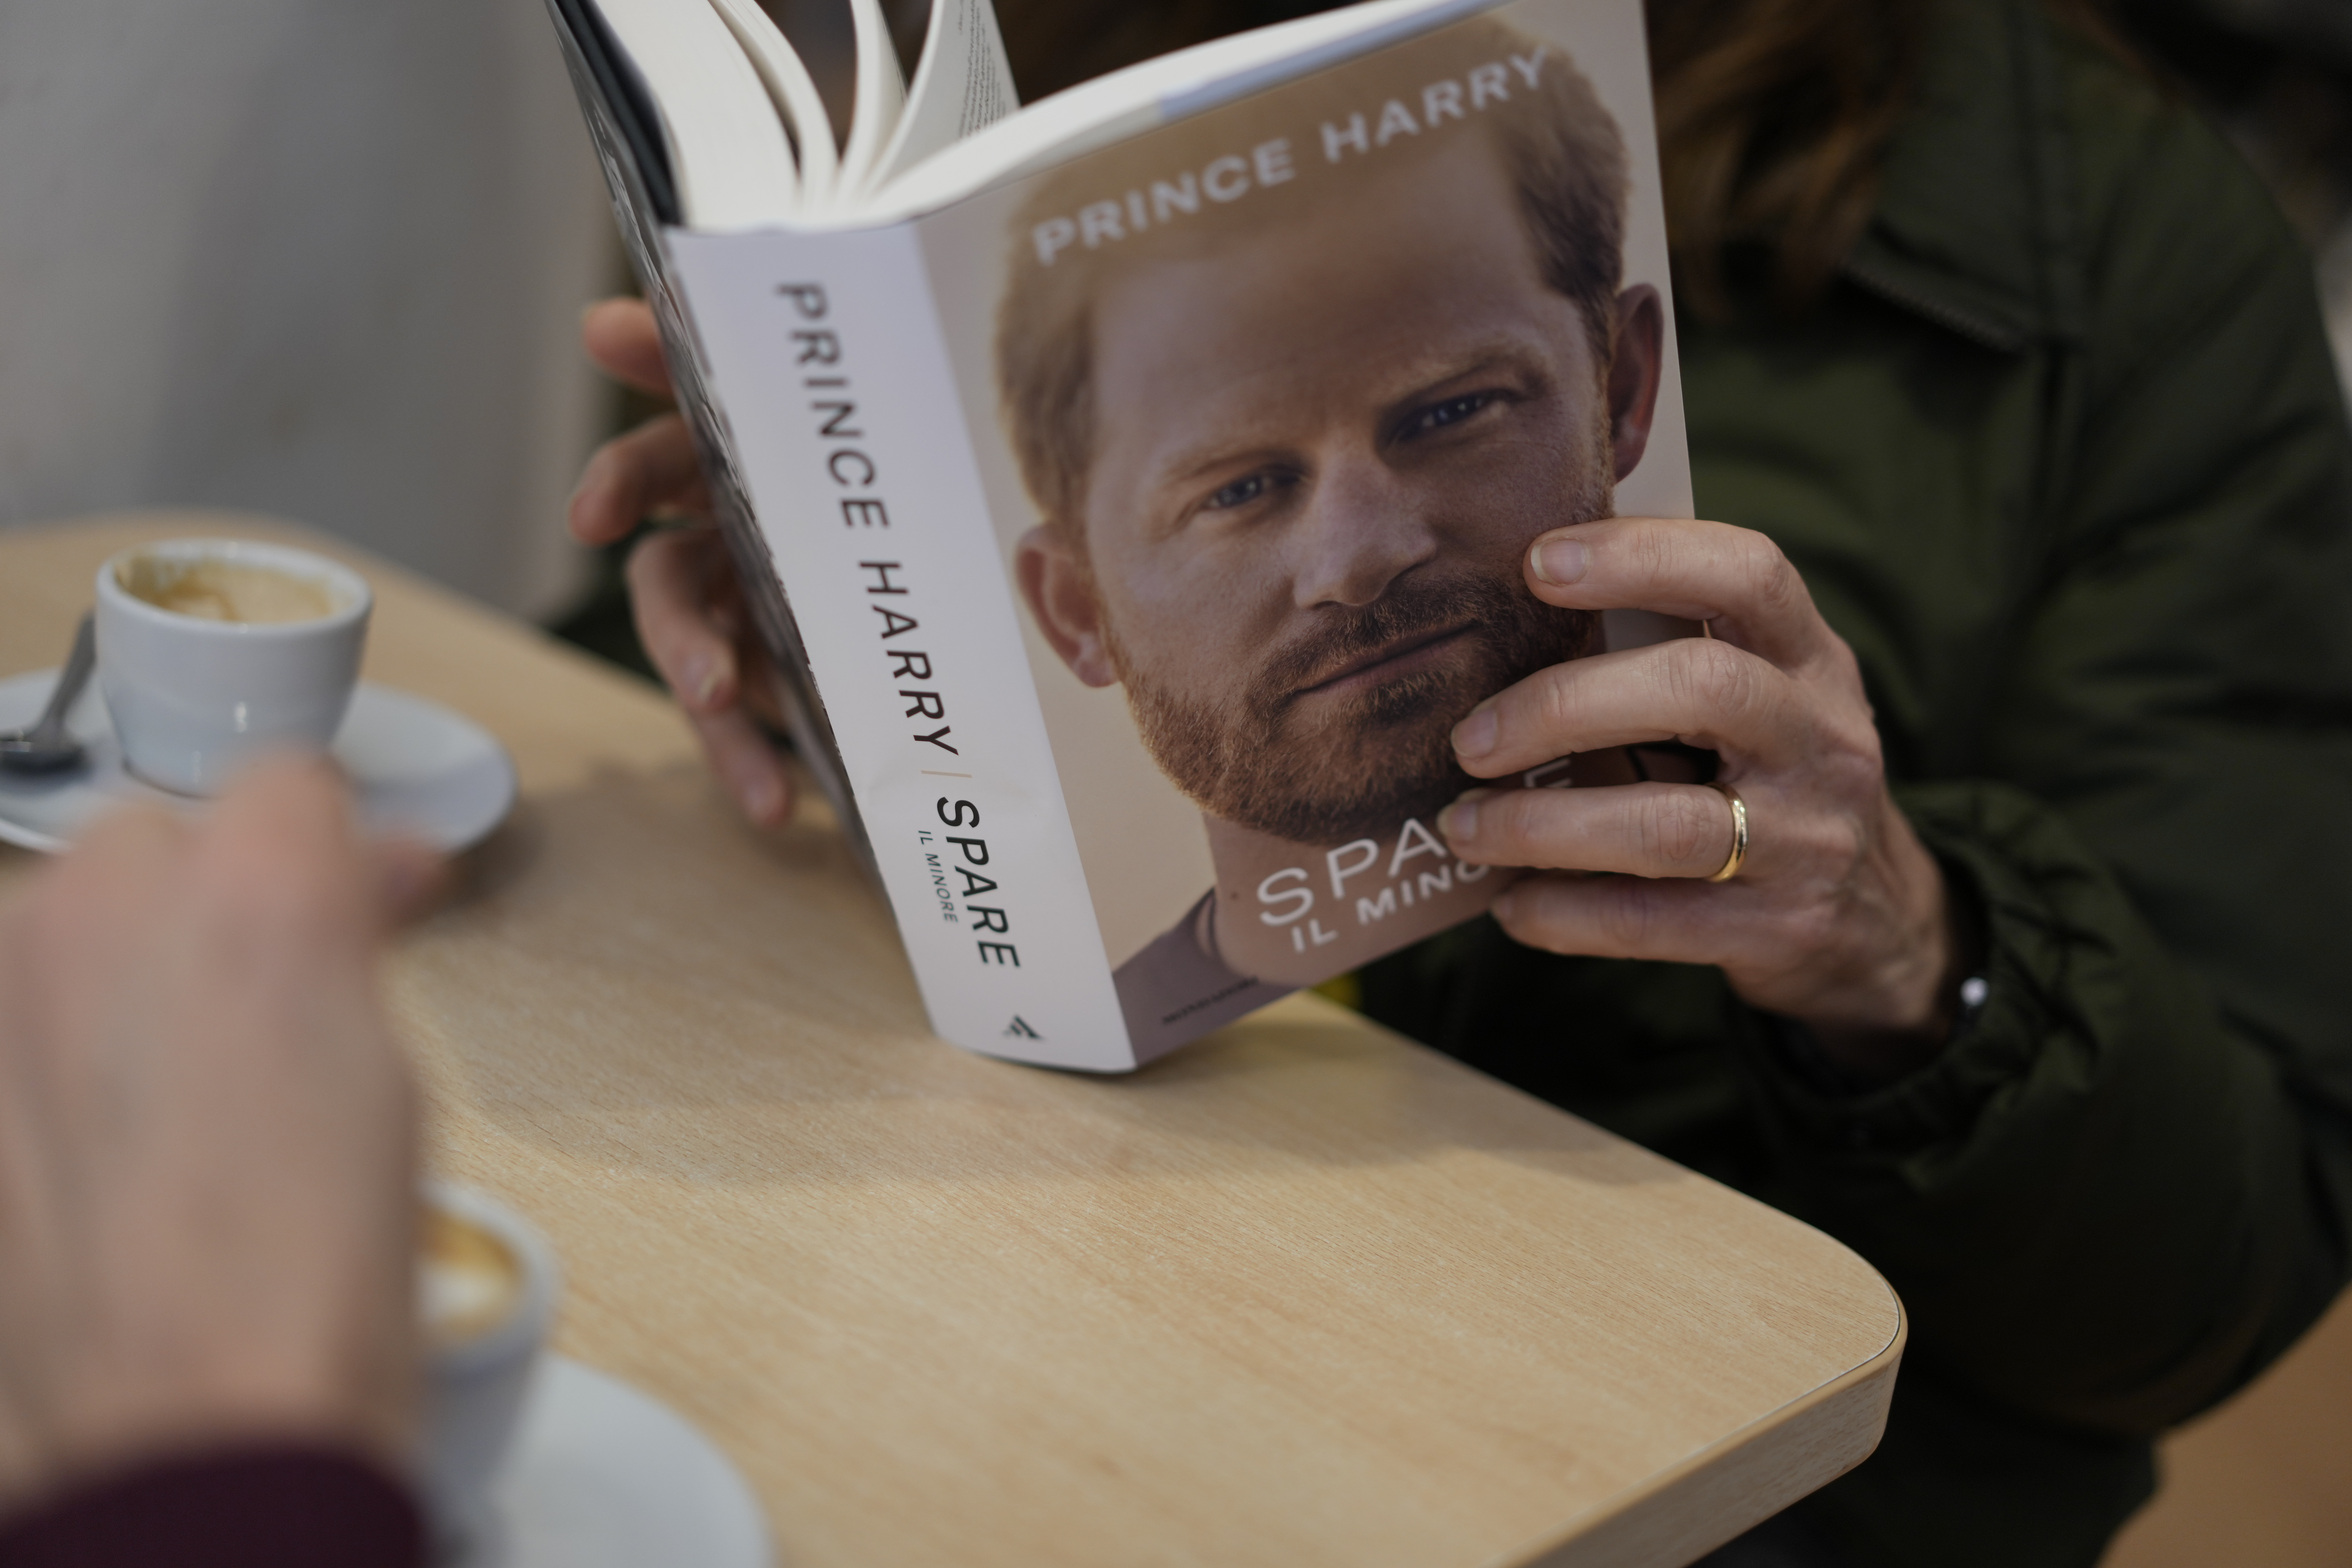 Una persona lee una copia del nuevo libro "Spare" del príncipe Enrique en una librería de Roma, el martes 10 de enero de 2023. (AP Foto/Andrew Medichini)